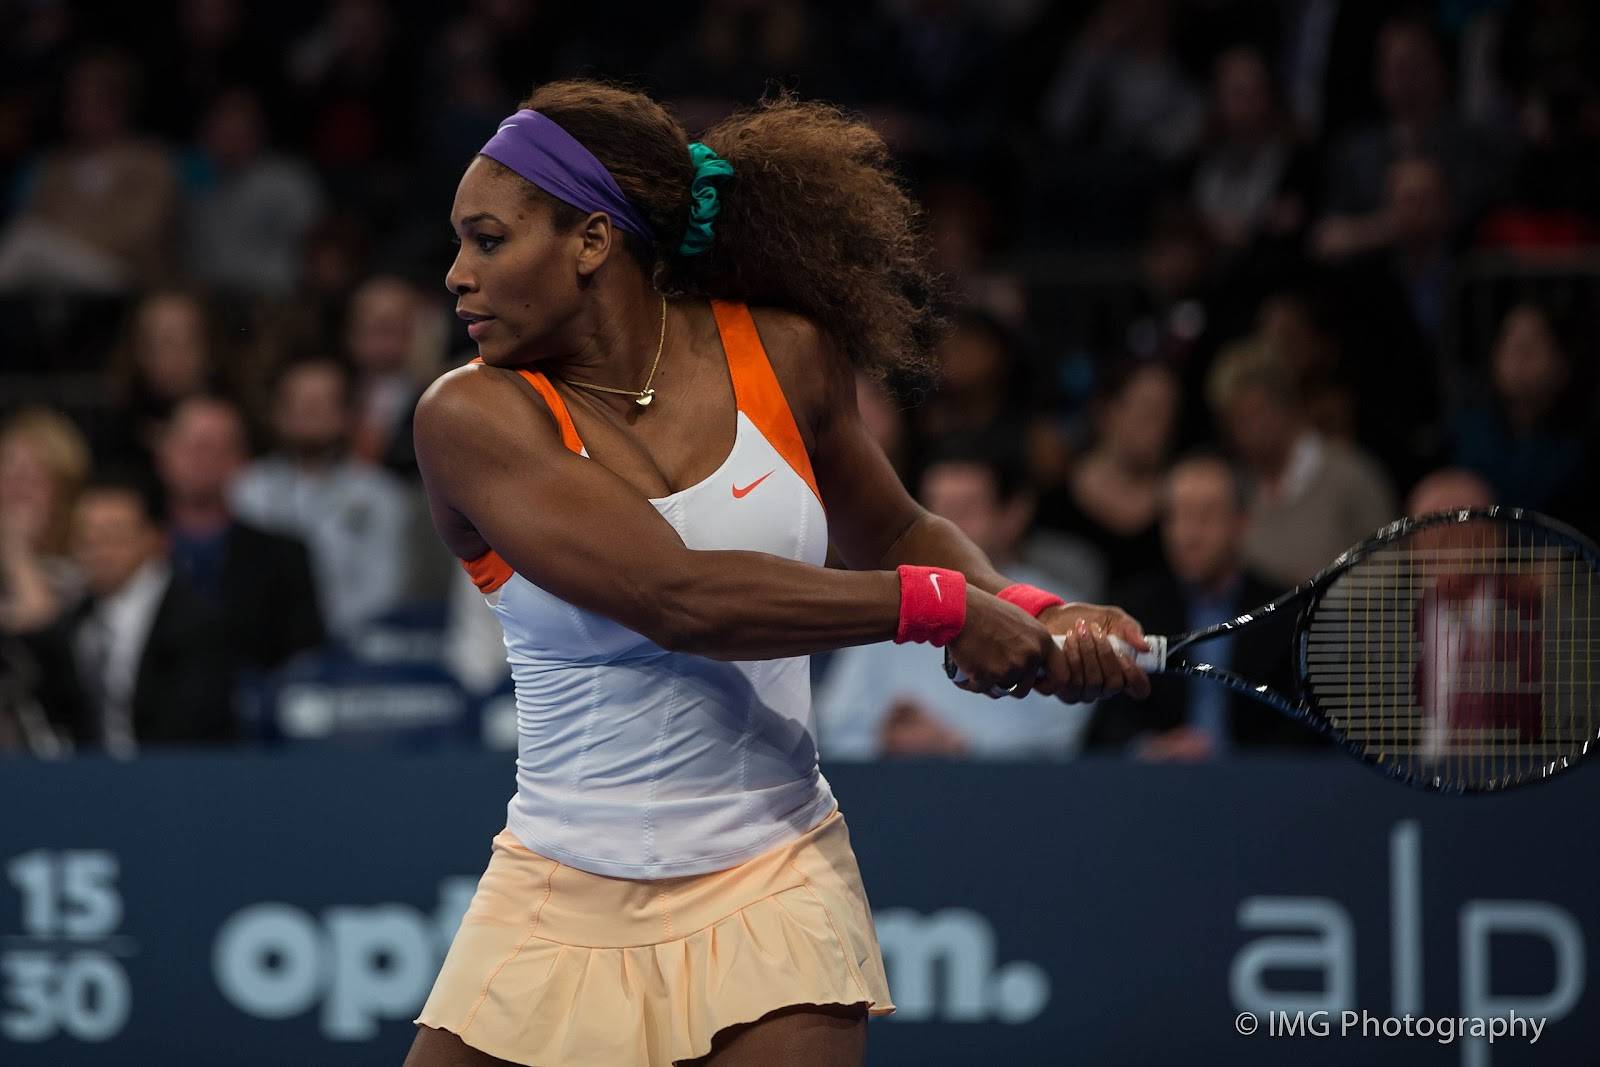 Altura de Serena Williams